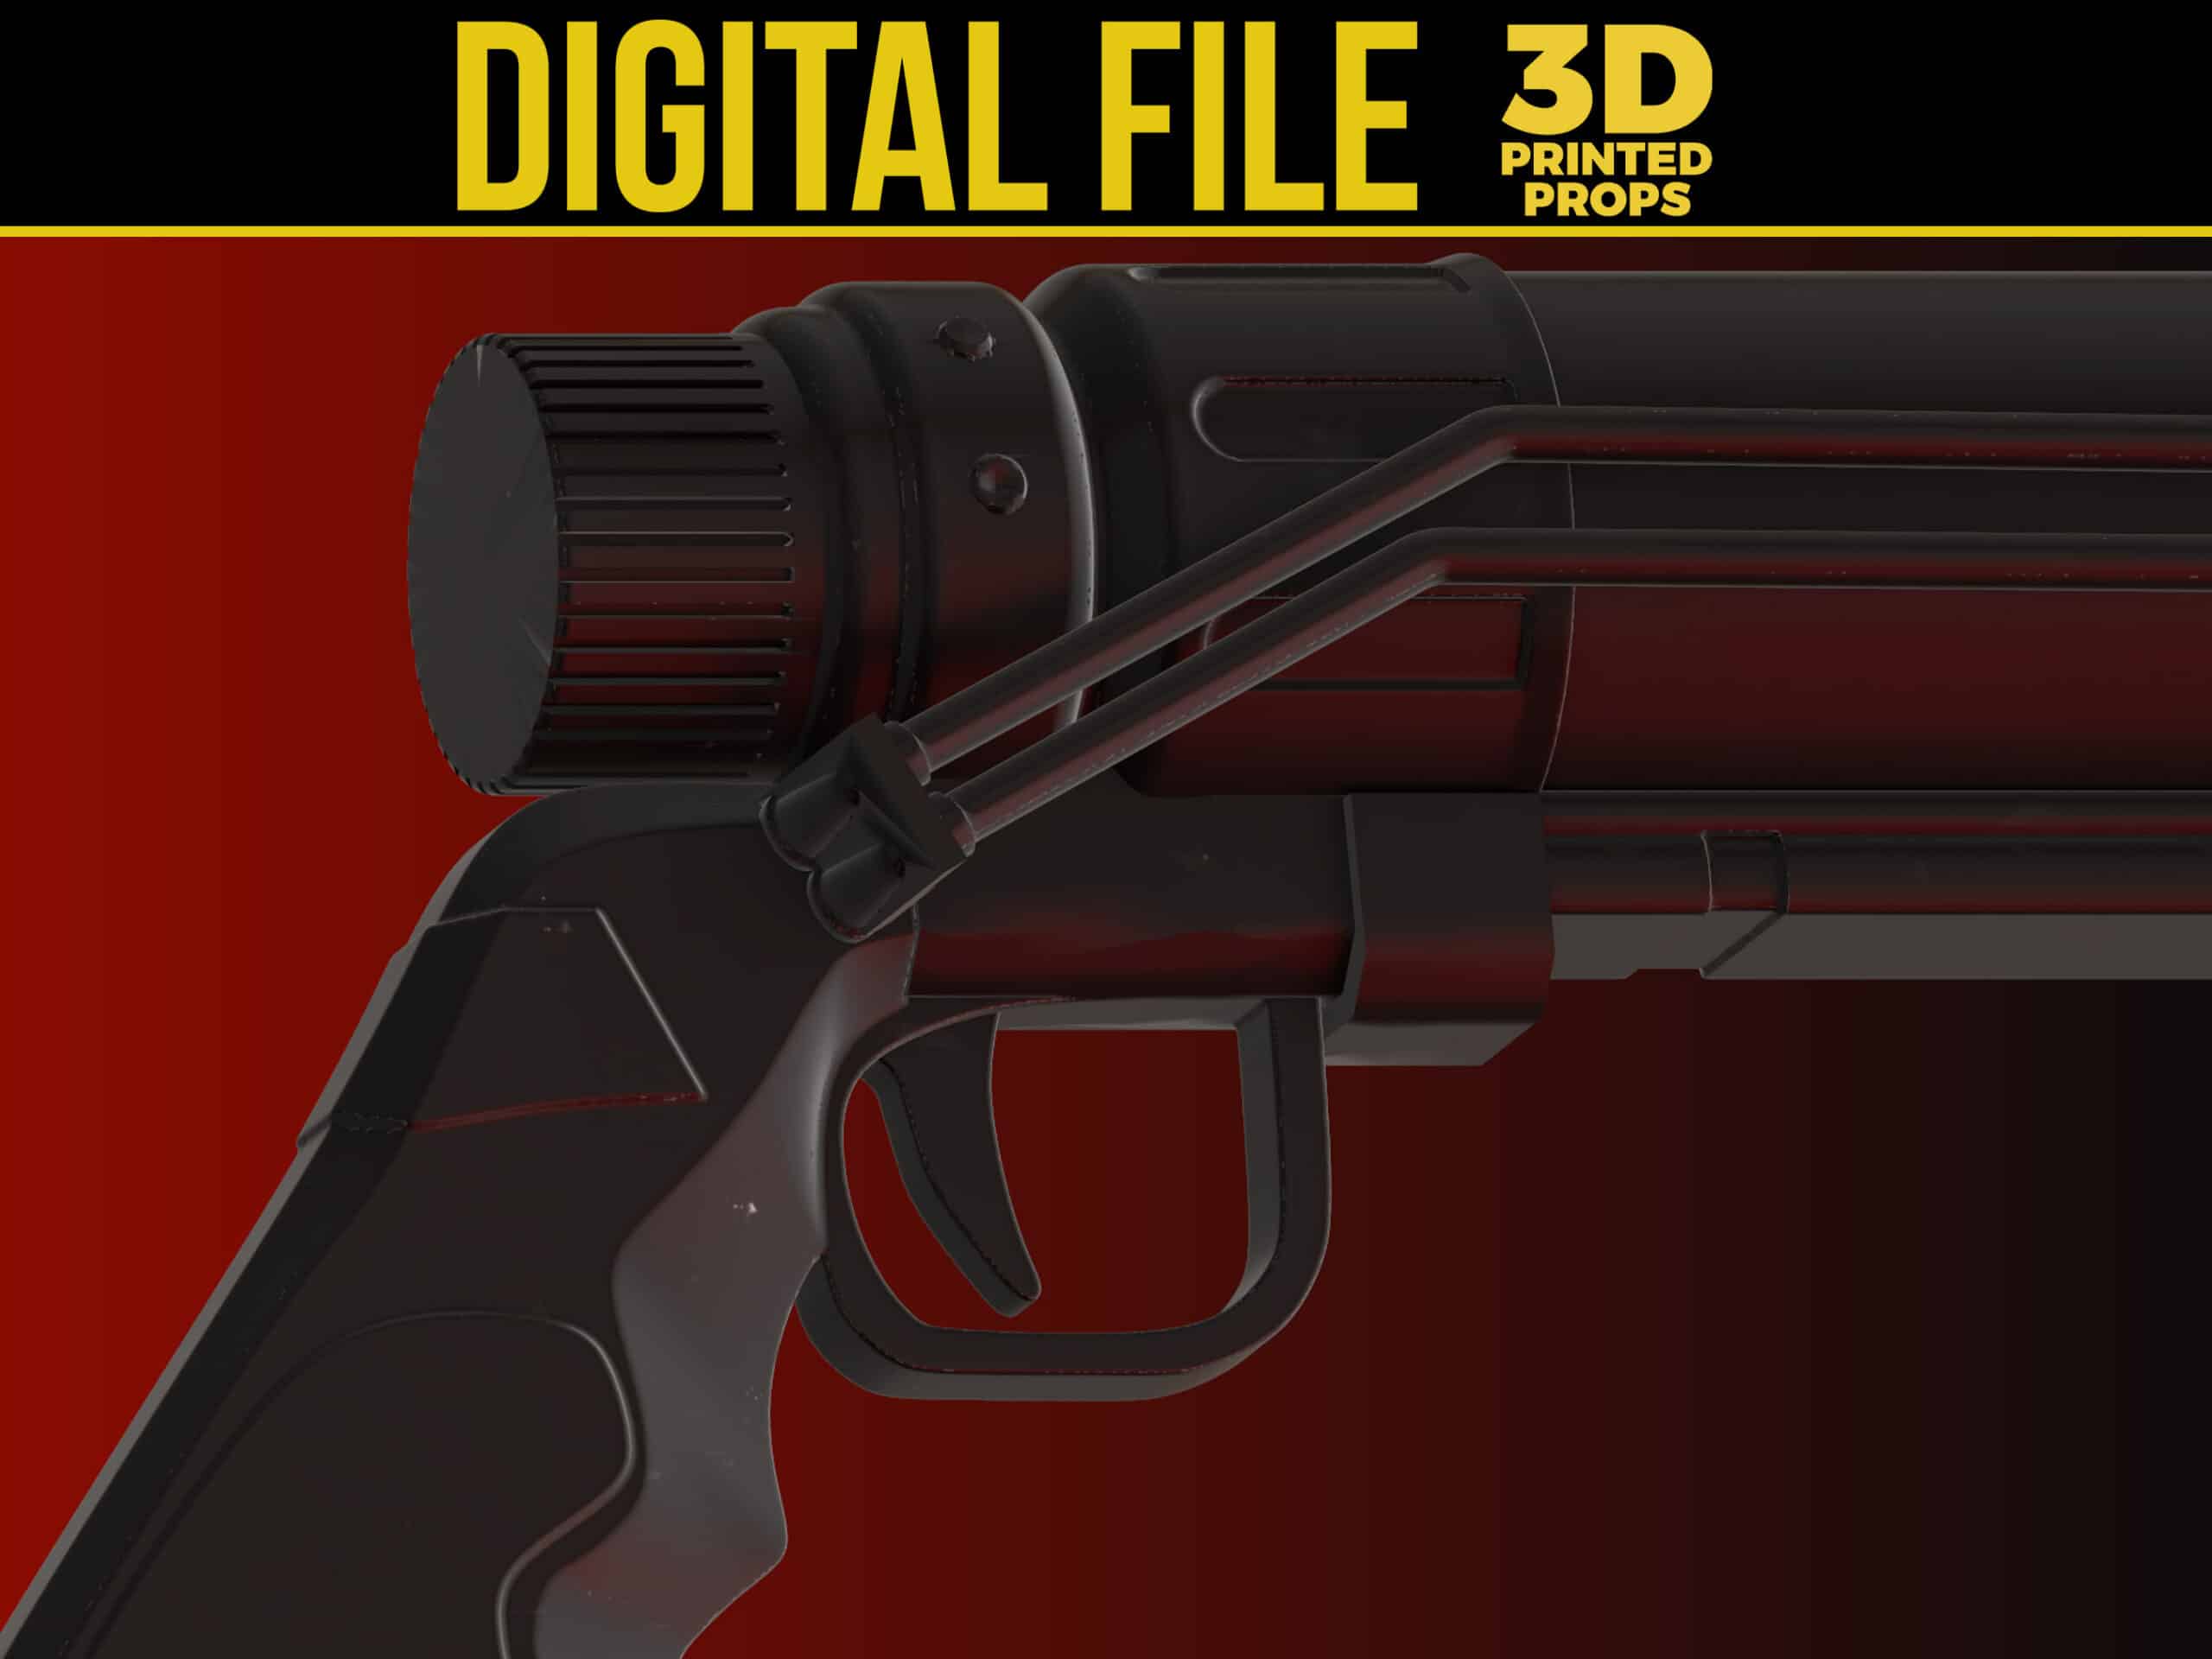 The Batman Grappling Gun 2022 - 3D PRINTED PROPS